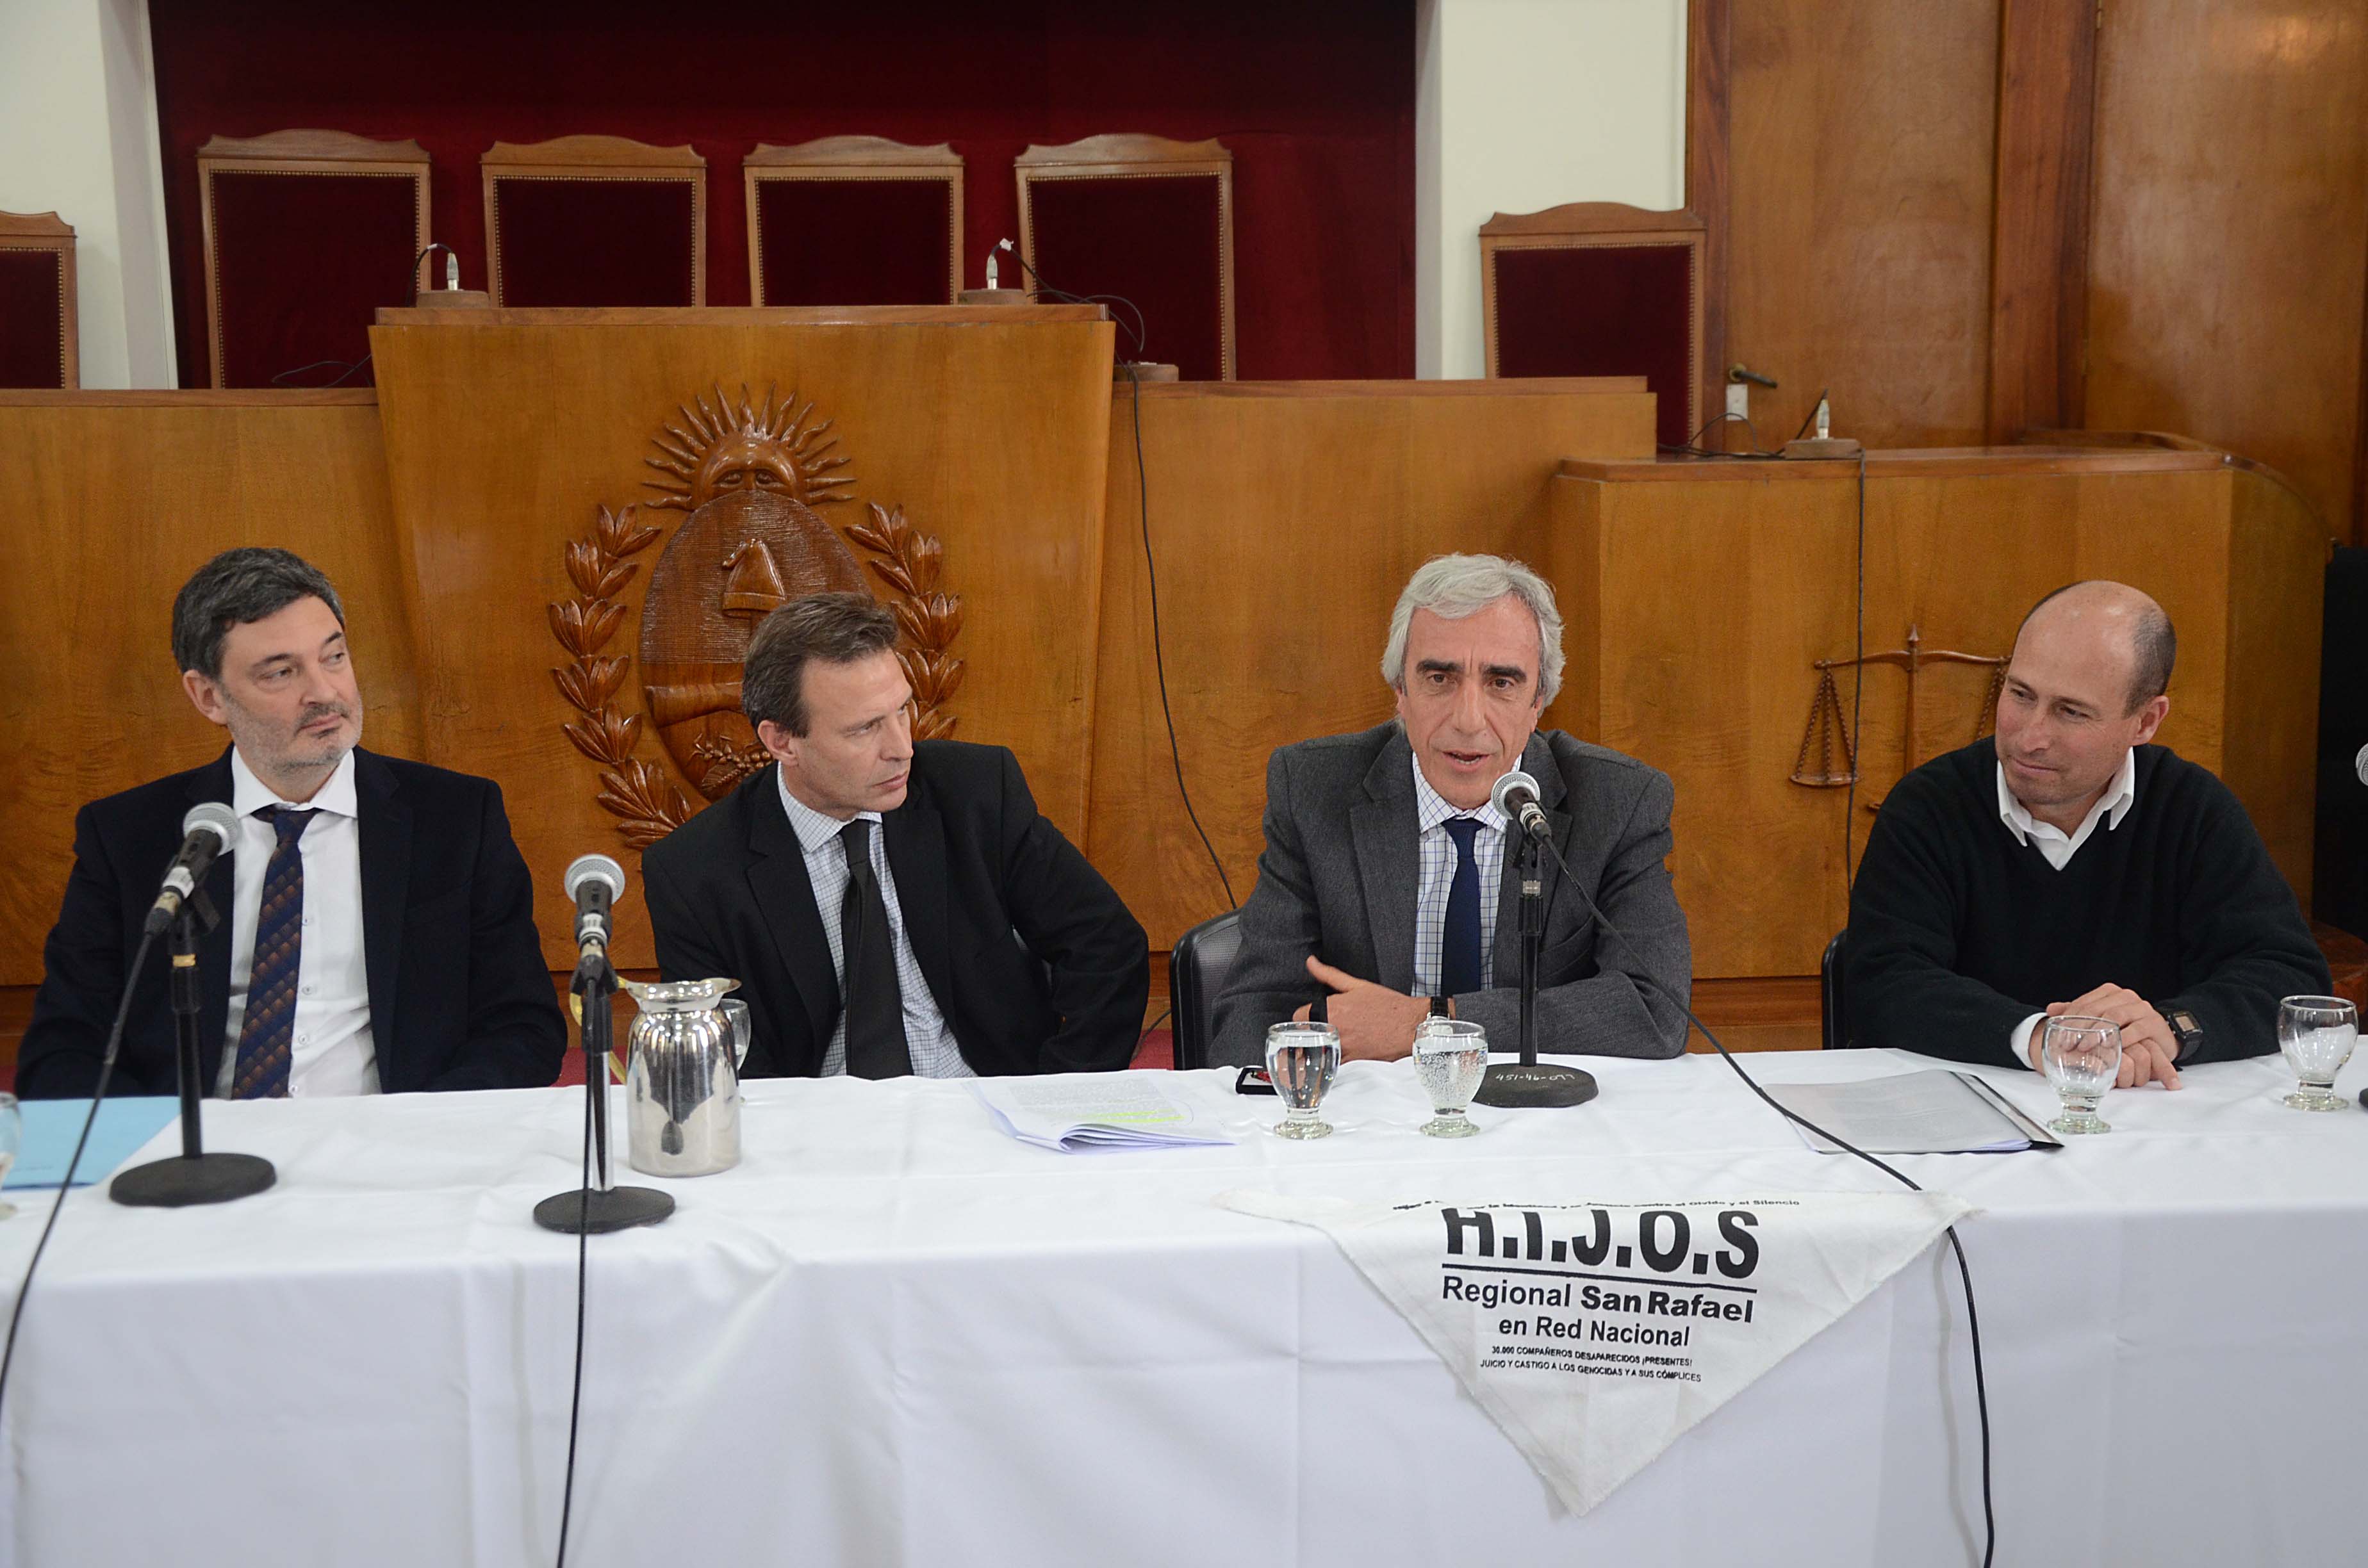 Foto: Prensa del Ministerio de Trabajo, Justicia y Gobierno de Mendoza